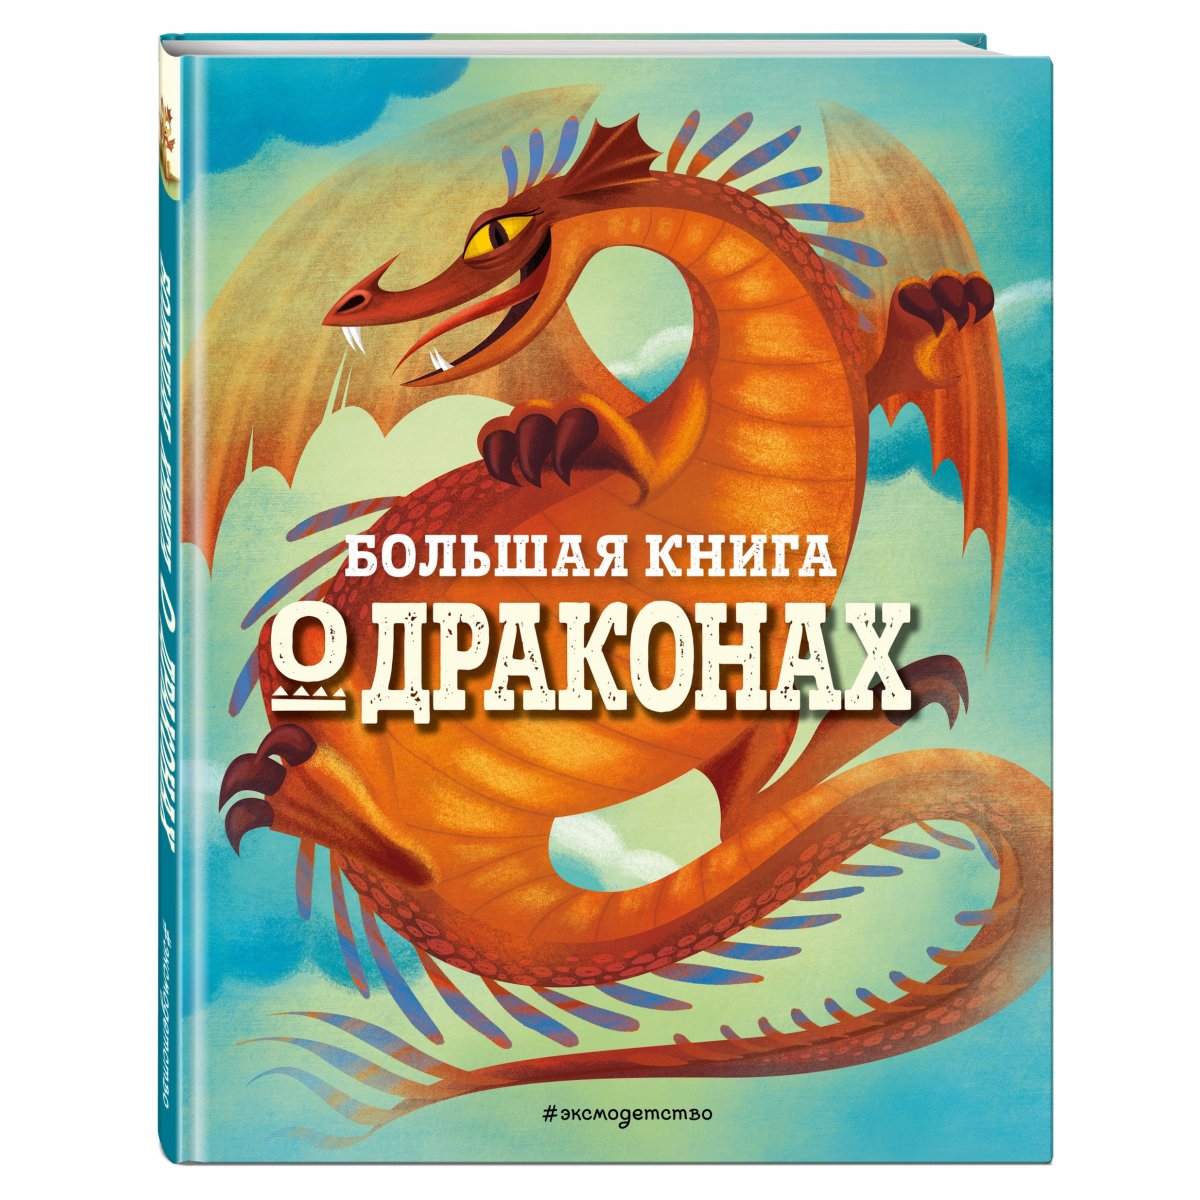 Ю. Петрова: Драконы. Большая книга игр для детей